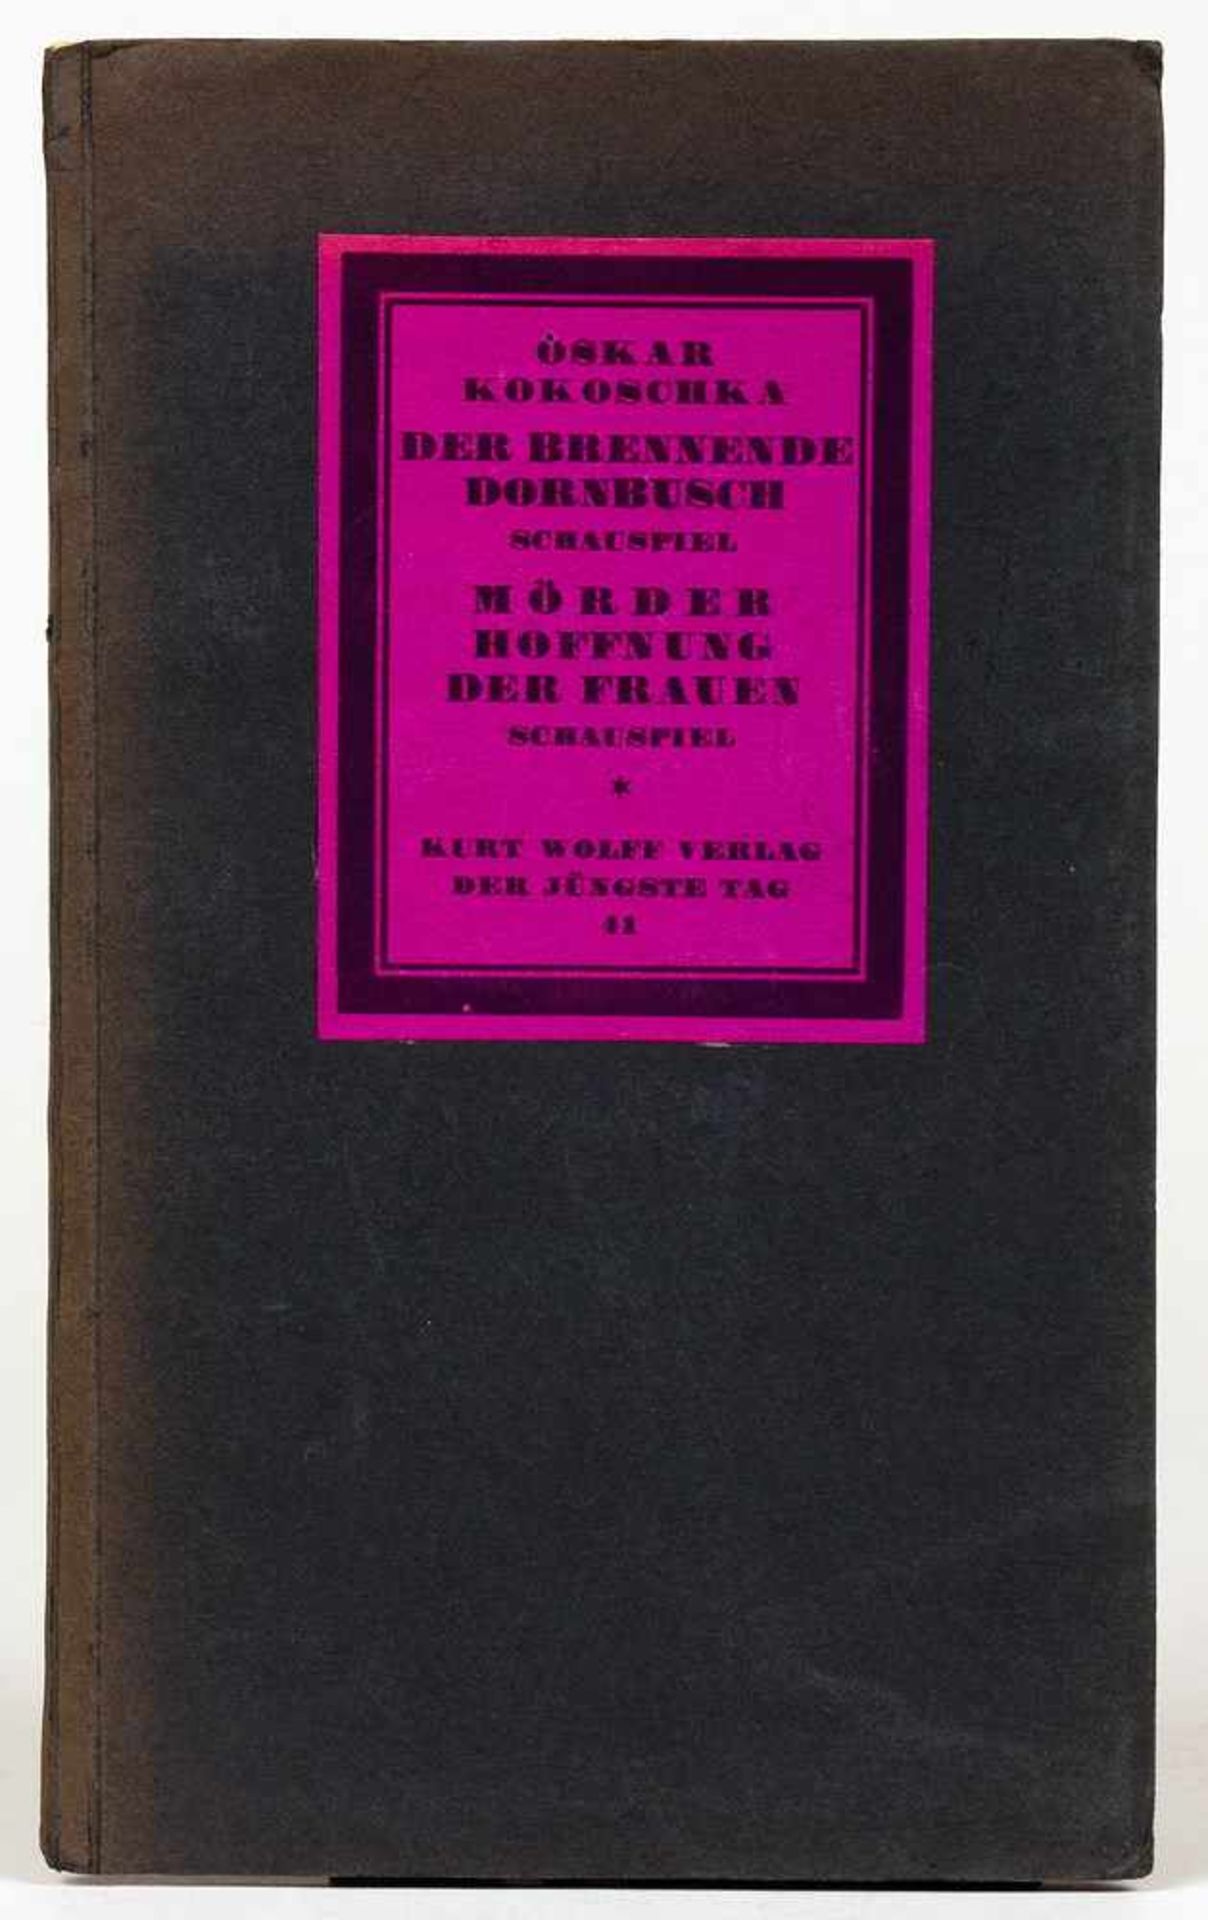 Oskar Kokoschka. Der brennende Dornbusch. Schauspiel (1911). Mörder. Hoffnung der Frauen. Schauspiel